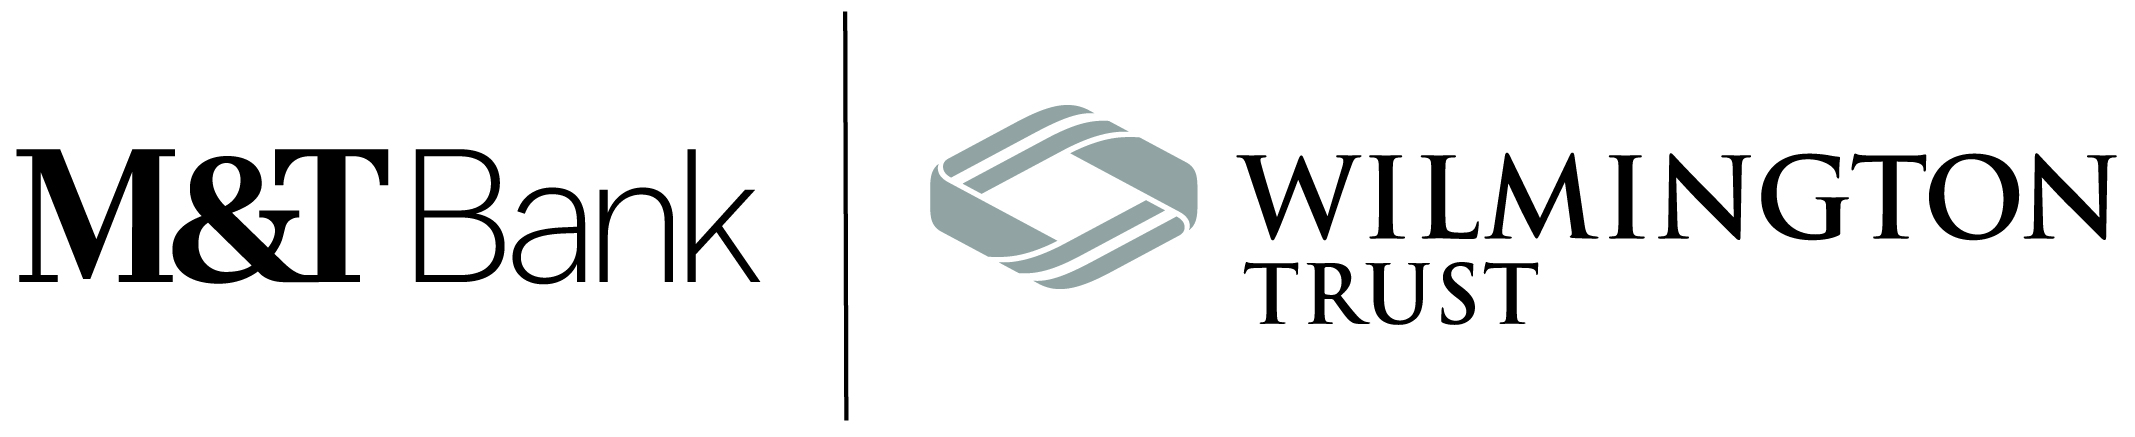 M&T Bank/Wilmington Trust